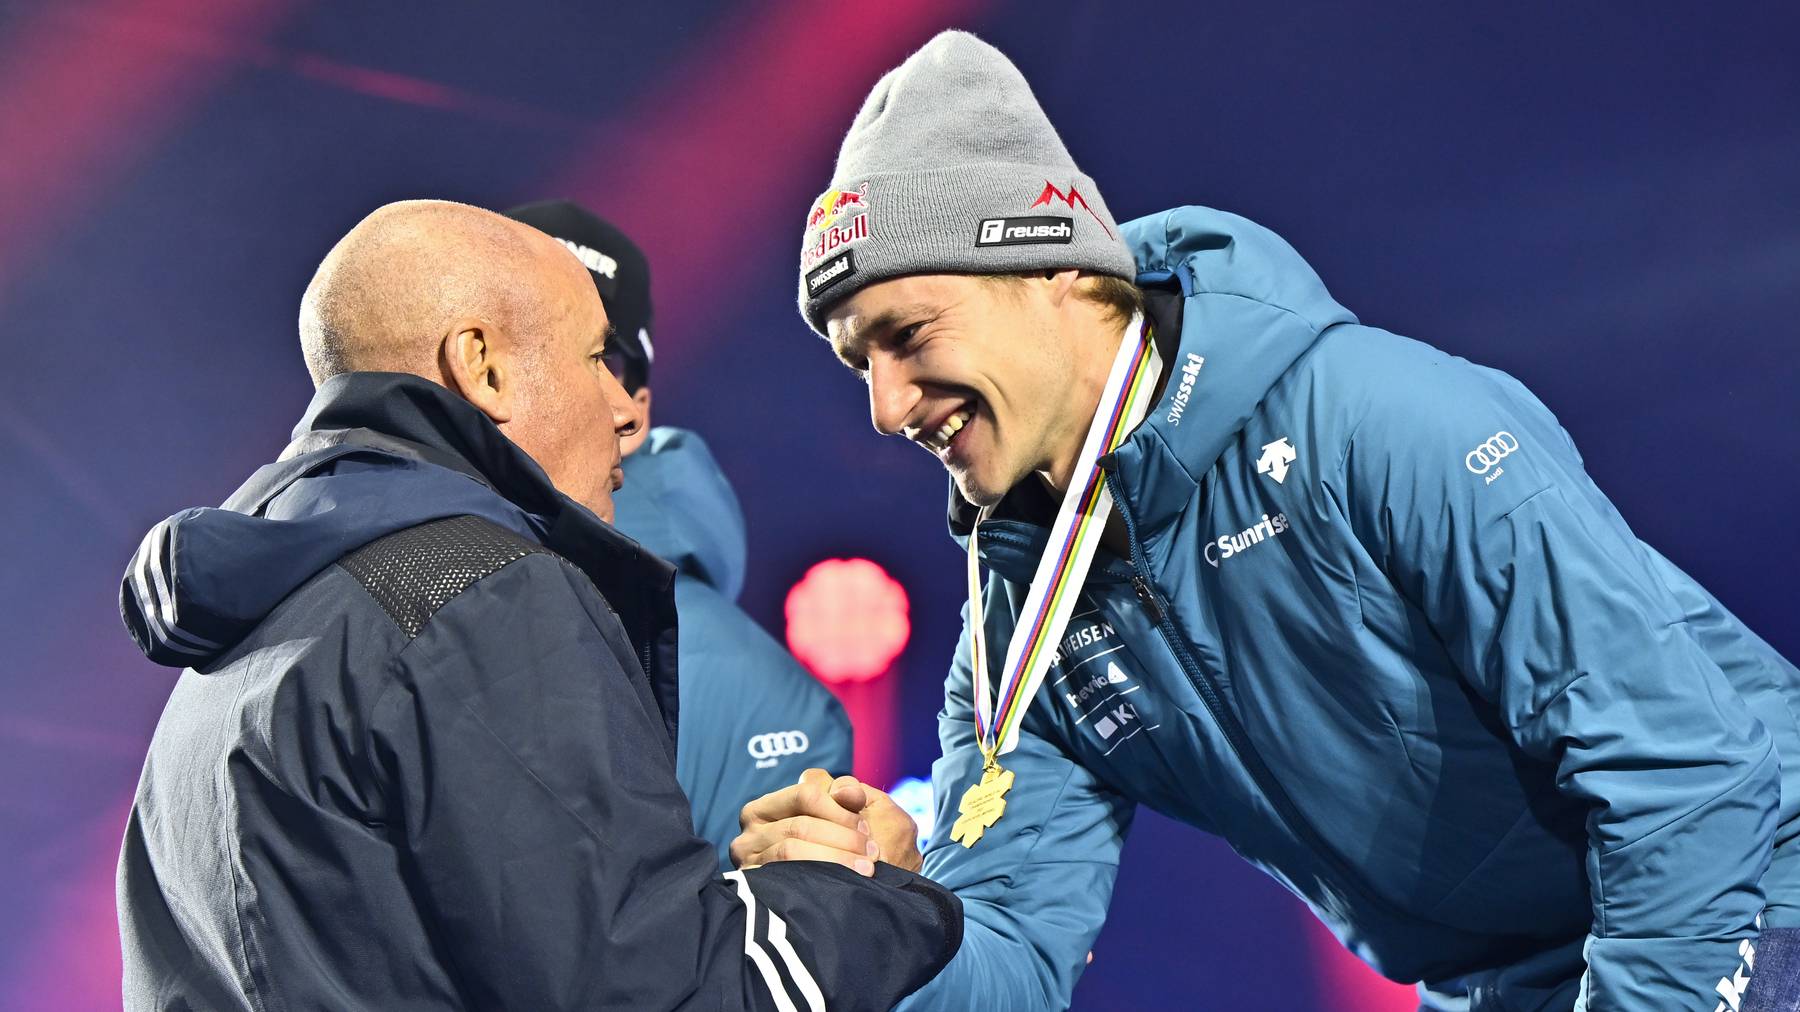 Johan Eliasch und Marco Odermatt gemeinsam bei einer Siegerehrung der Ski-WM 2023 in Courchevel (FRA).